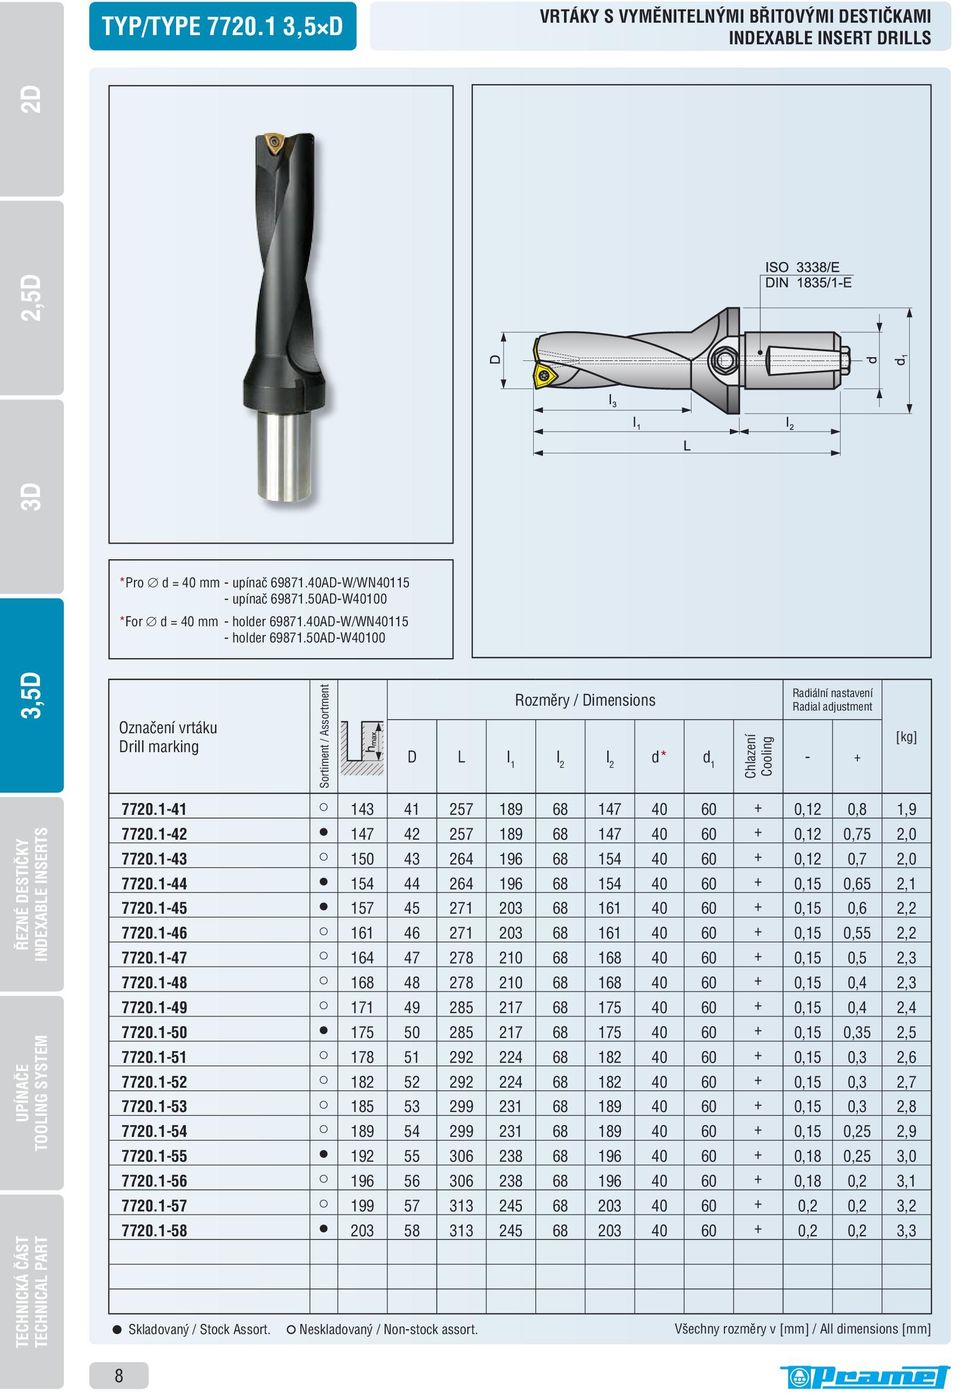 50AD-W40100 Označení vrtáku Drill marking Sortiment / Assortment Rozměry / Dimensions D L l 1 l 2 l 2 d* d 1 Chlazení Cooling Radiální nastavení Radial adjustment - + [kg] INDEXABLE INSERTS TOOLING